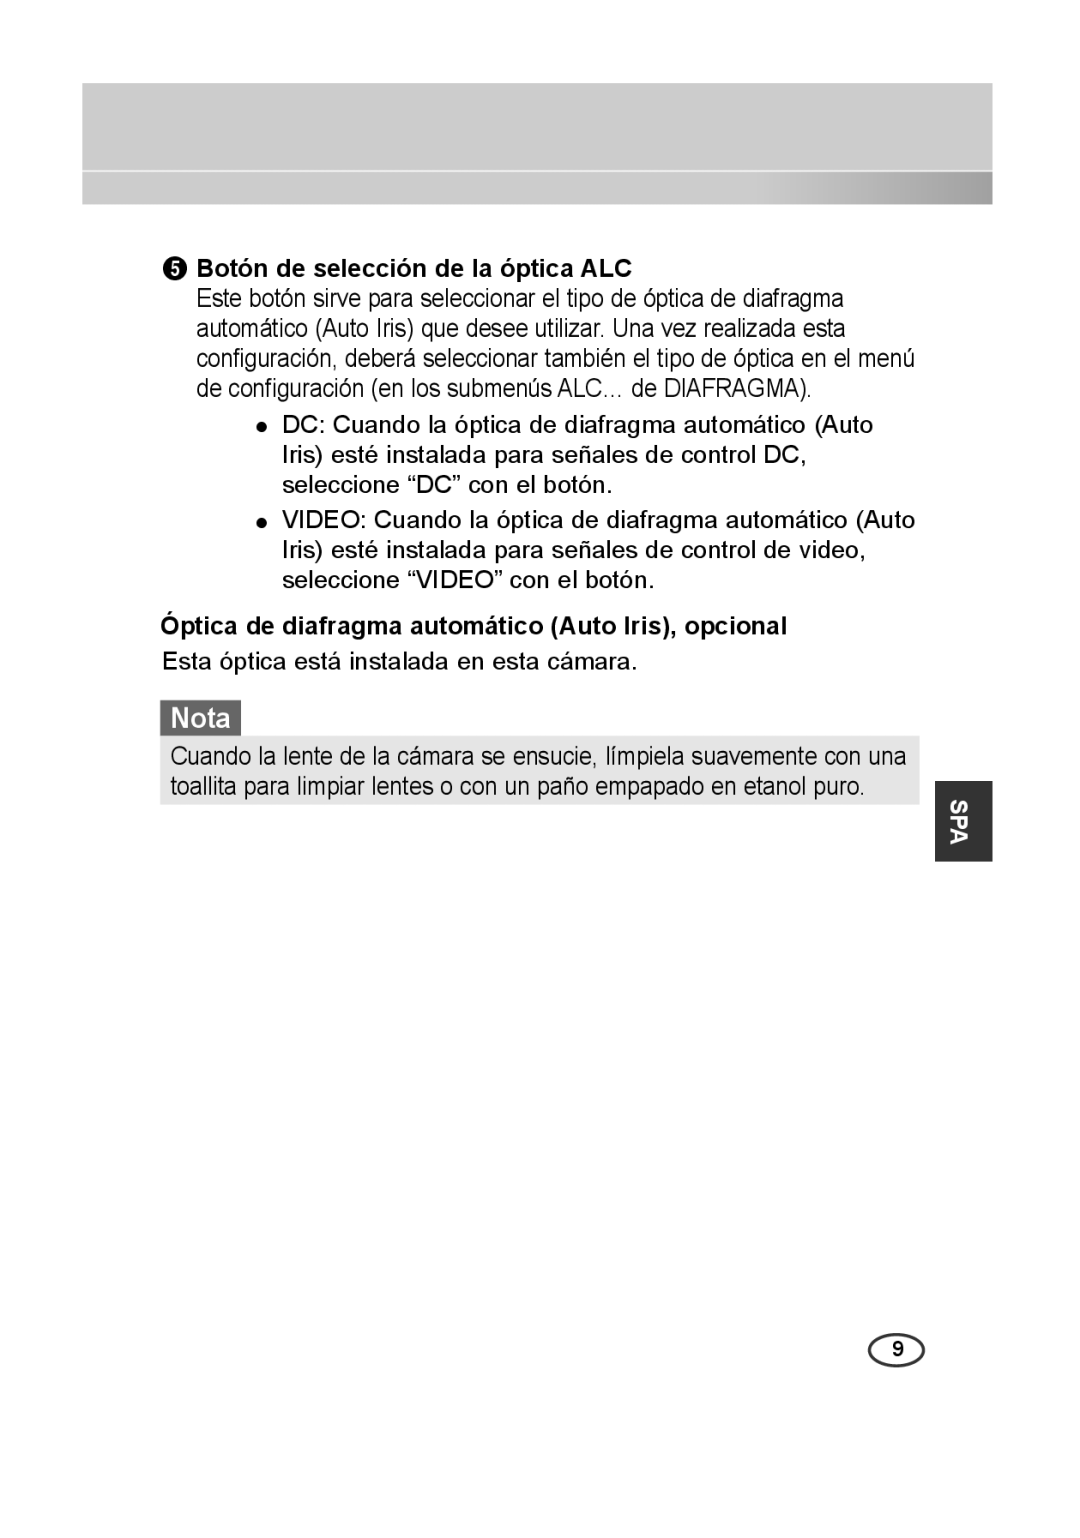 Samsung SCC-A2313P manual Nota, 5 Botón de selección de la óptica ALC, Óptica de diafragma automático Auto Iris, opcional 